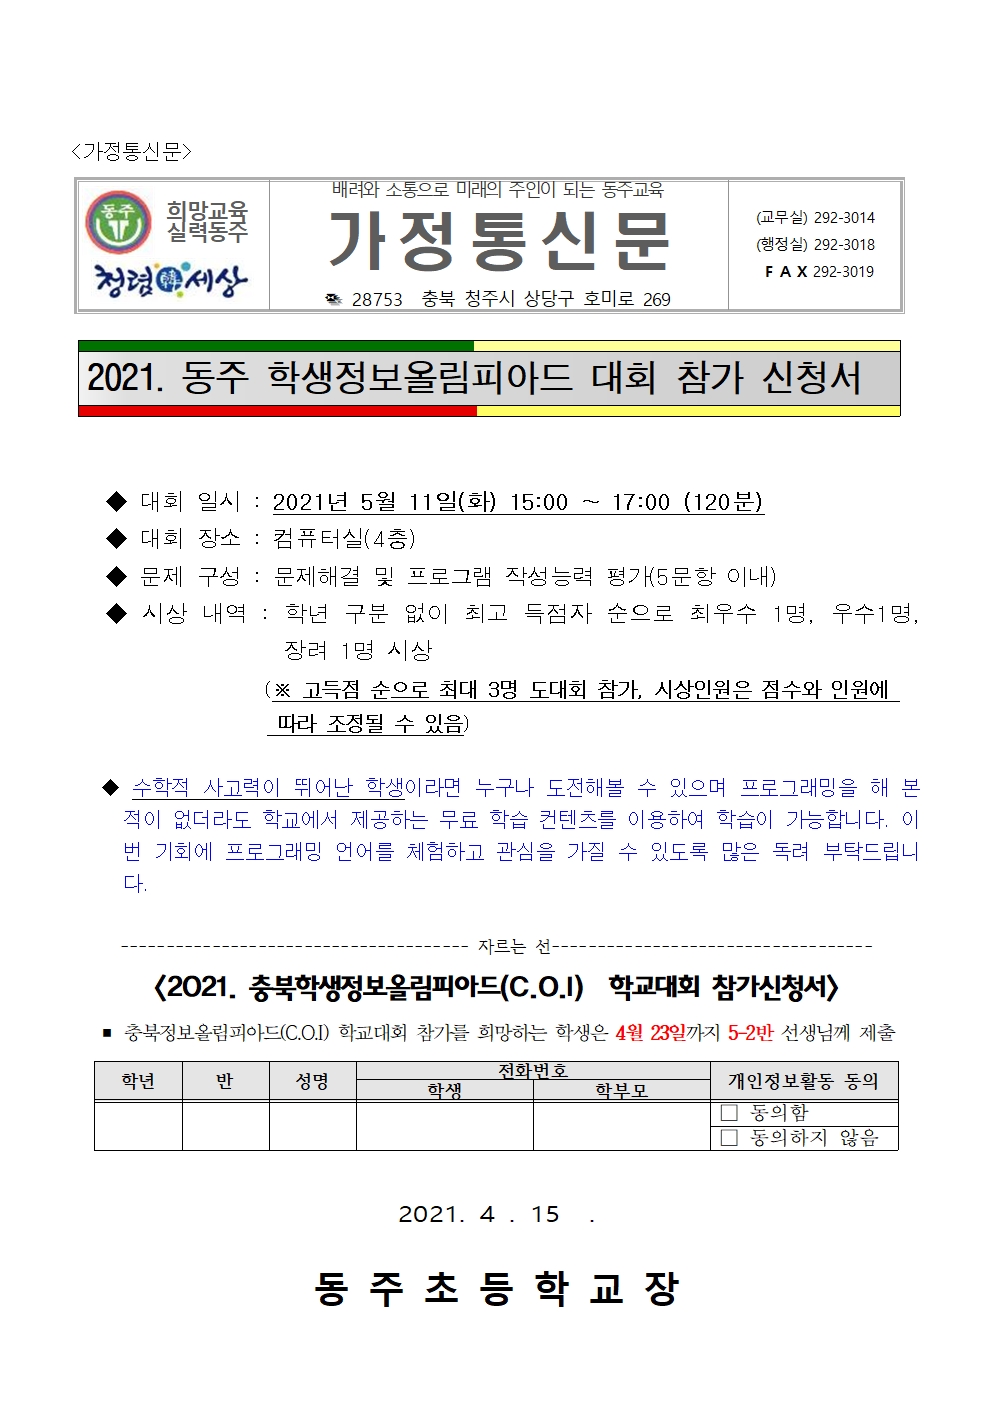 2021 동주 학생정보올림피아드 개최 가정통신문001